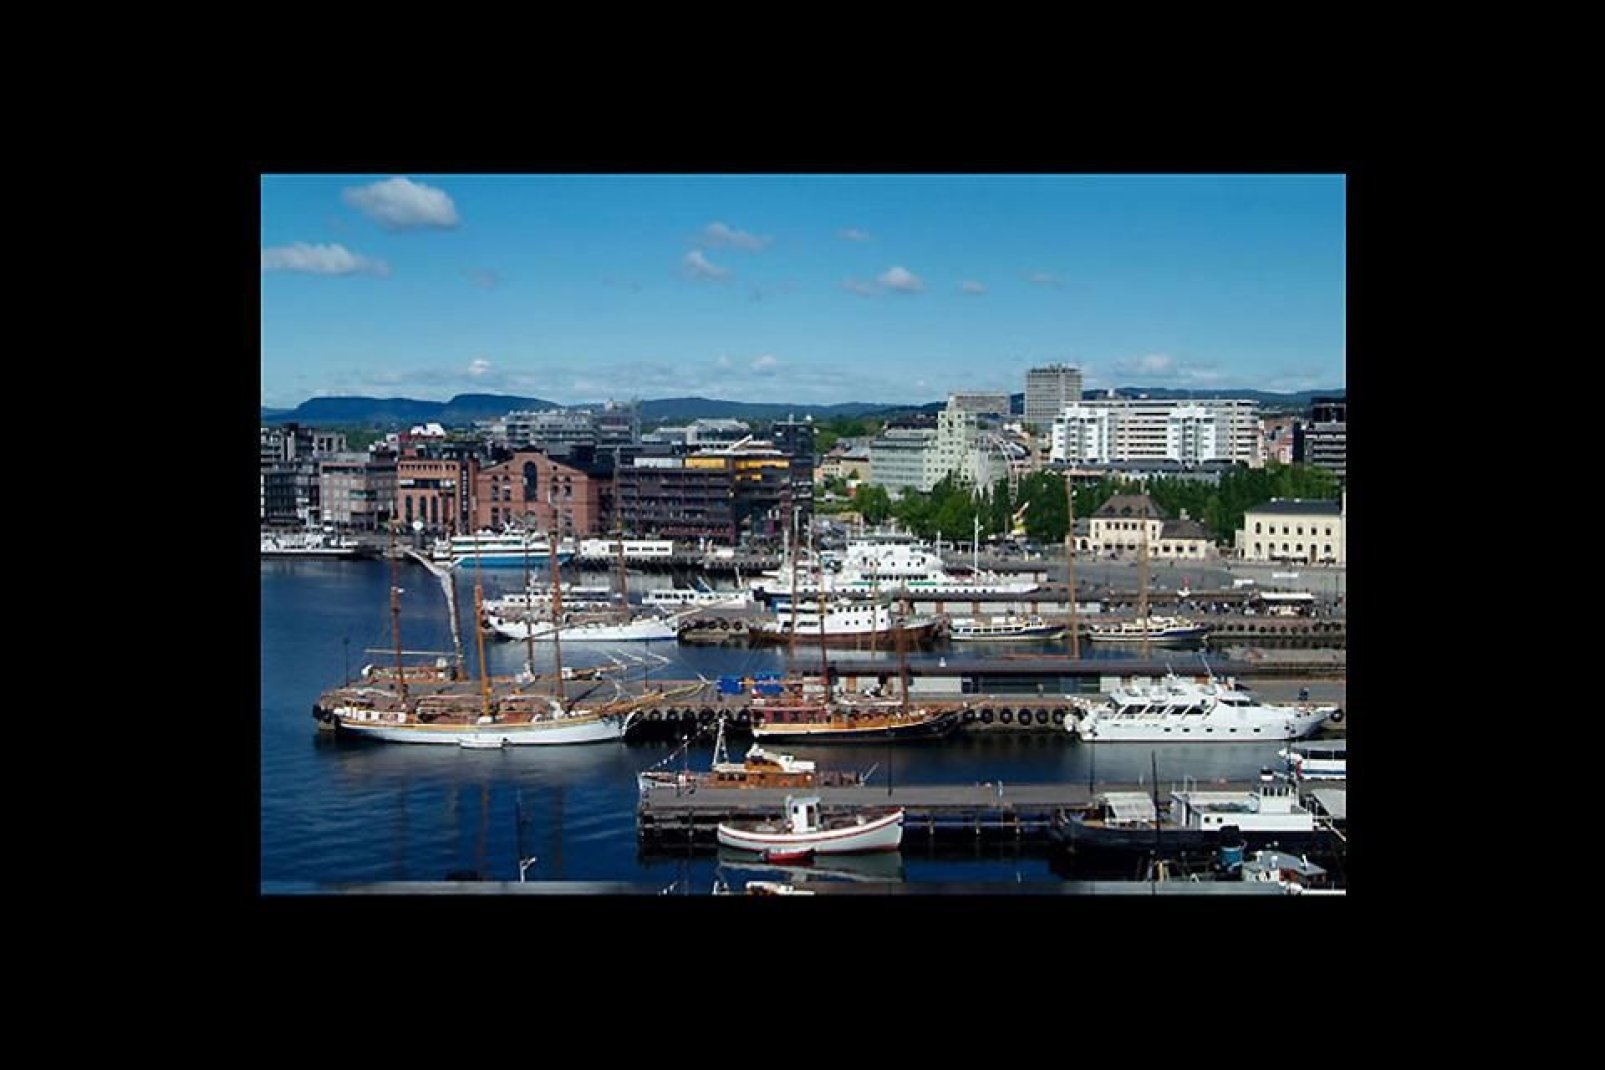 Oslo ist mit knapp 600.000 Einwohnern die bevölkerungsreichste Stadt und Hauptstadt Norwegens.